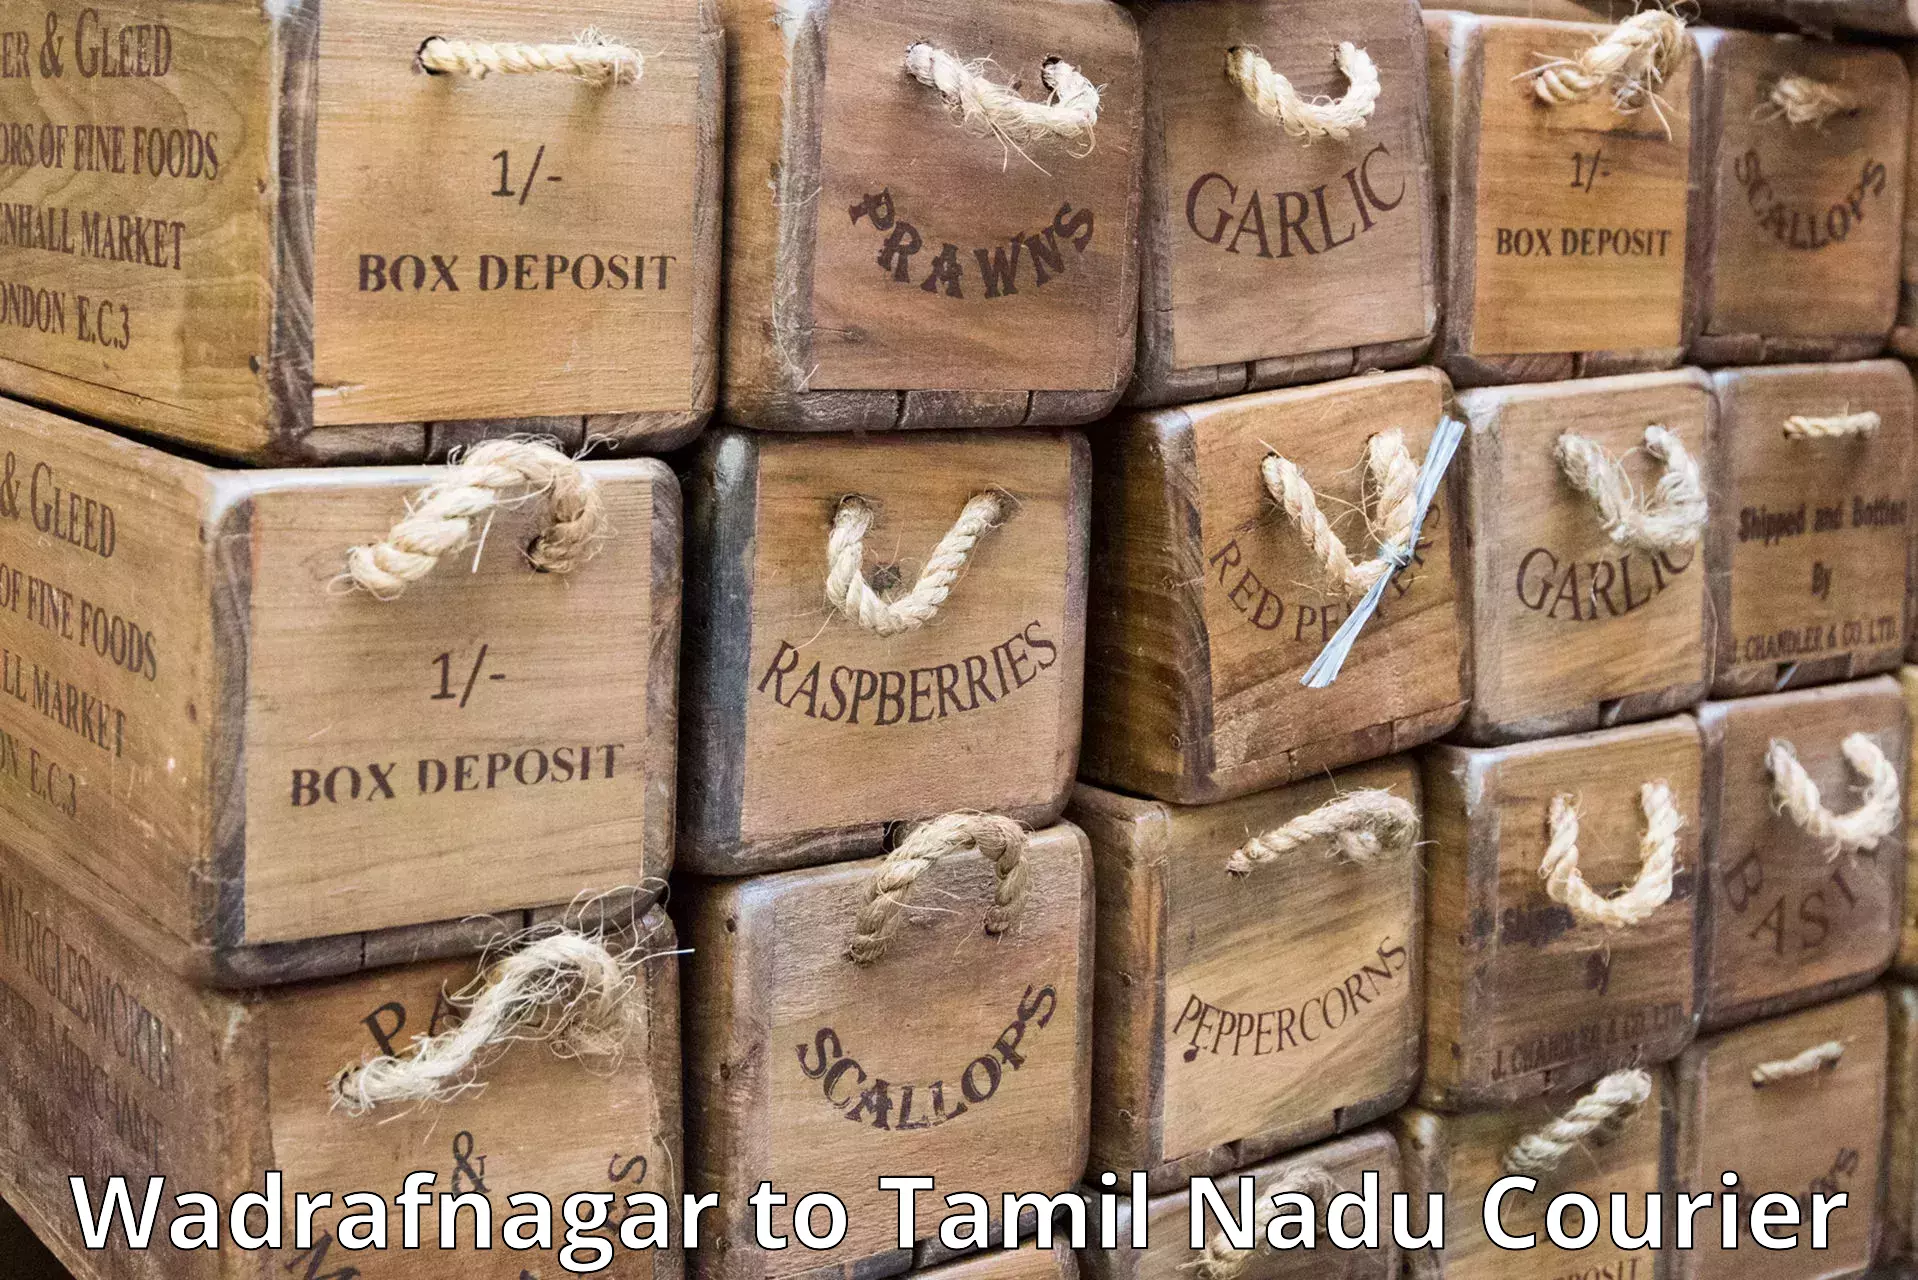 Versatile courier offerings Wadrafnagar to Chennai